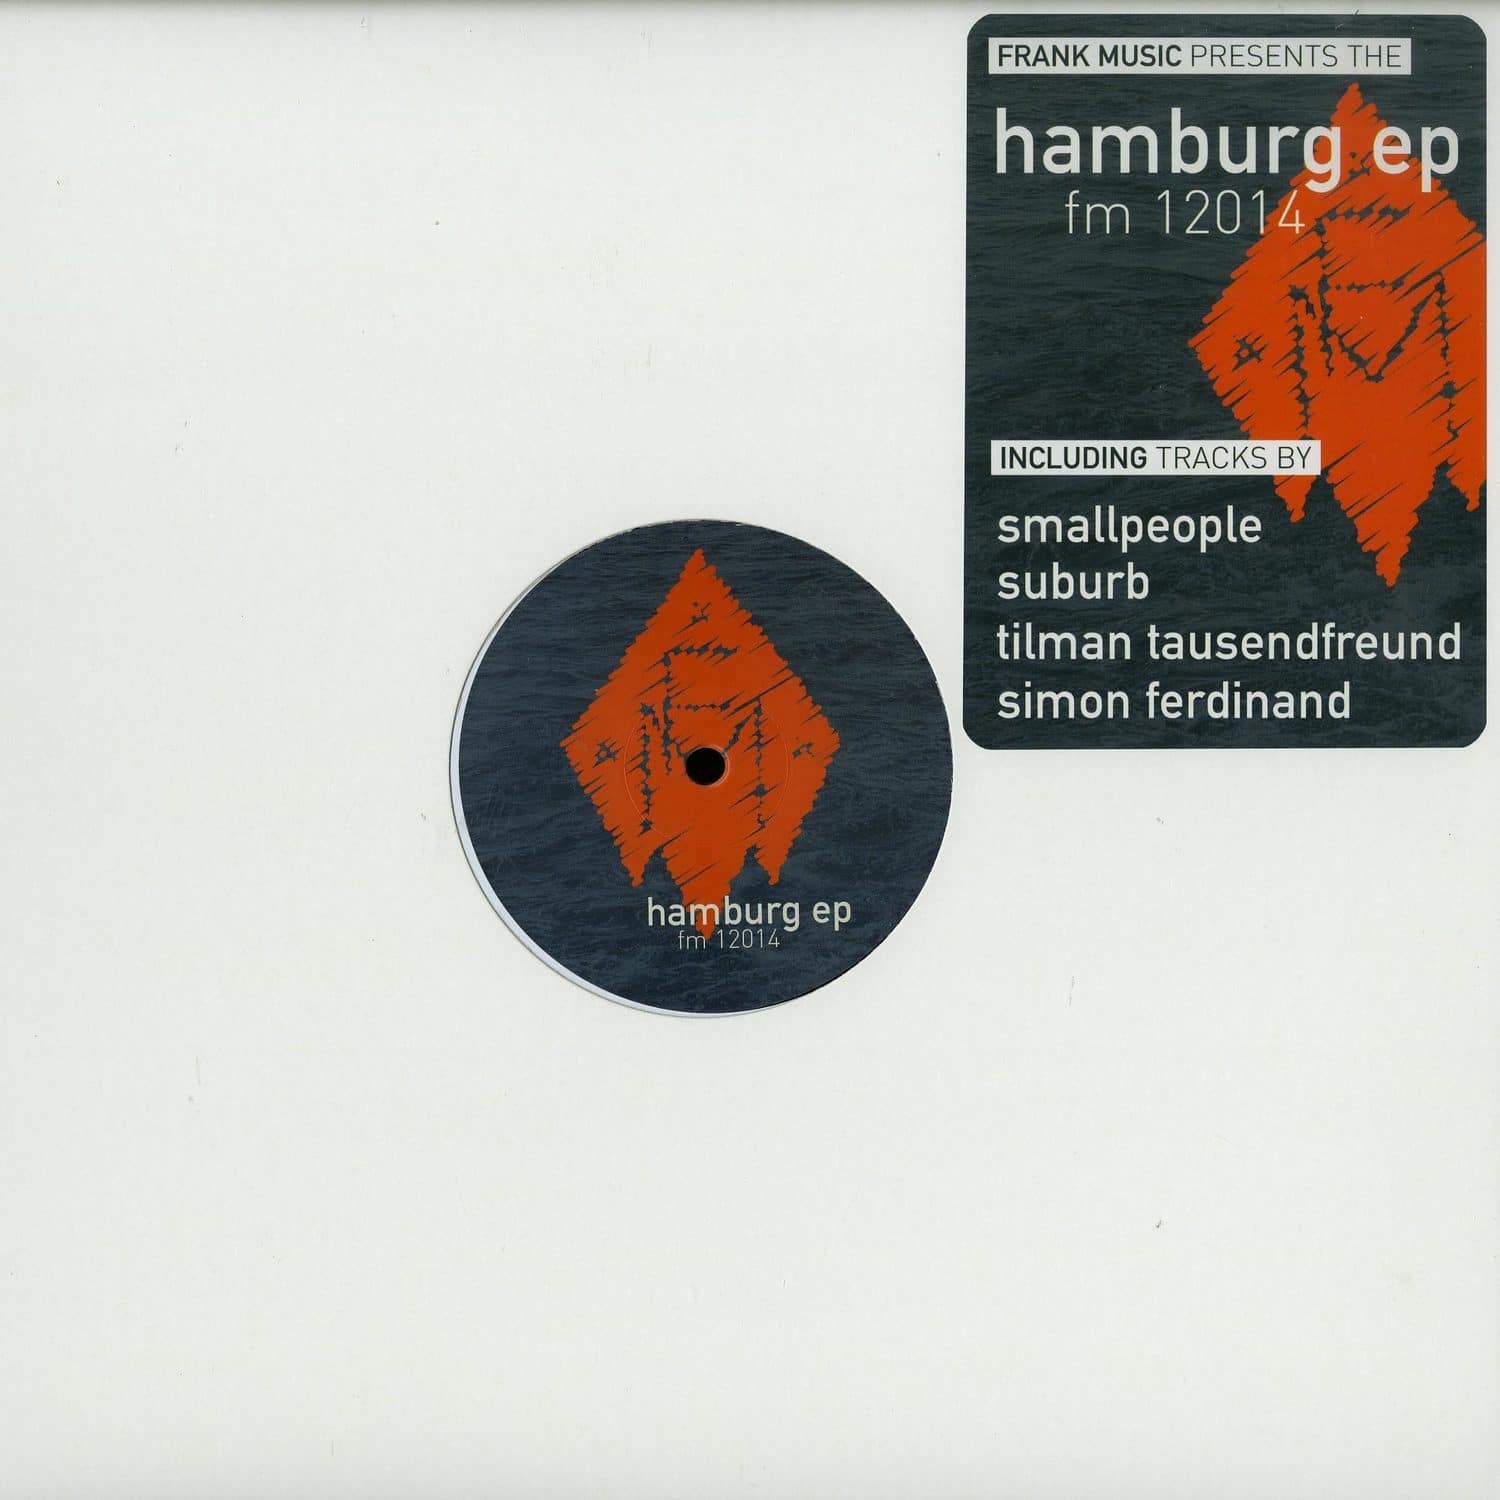 Smallpeople / Suburb / Tausendfreund / Ferdinand - THE HAMBURG EP